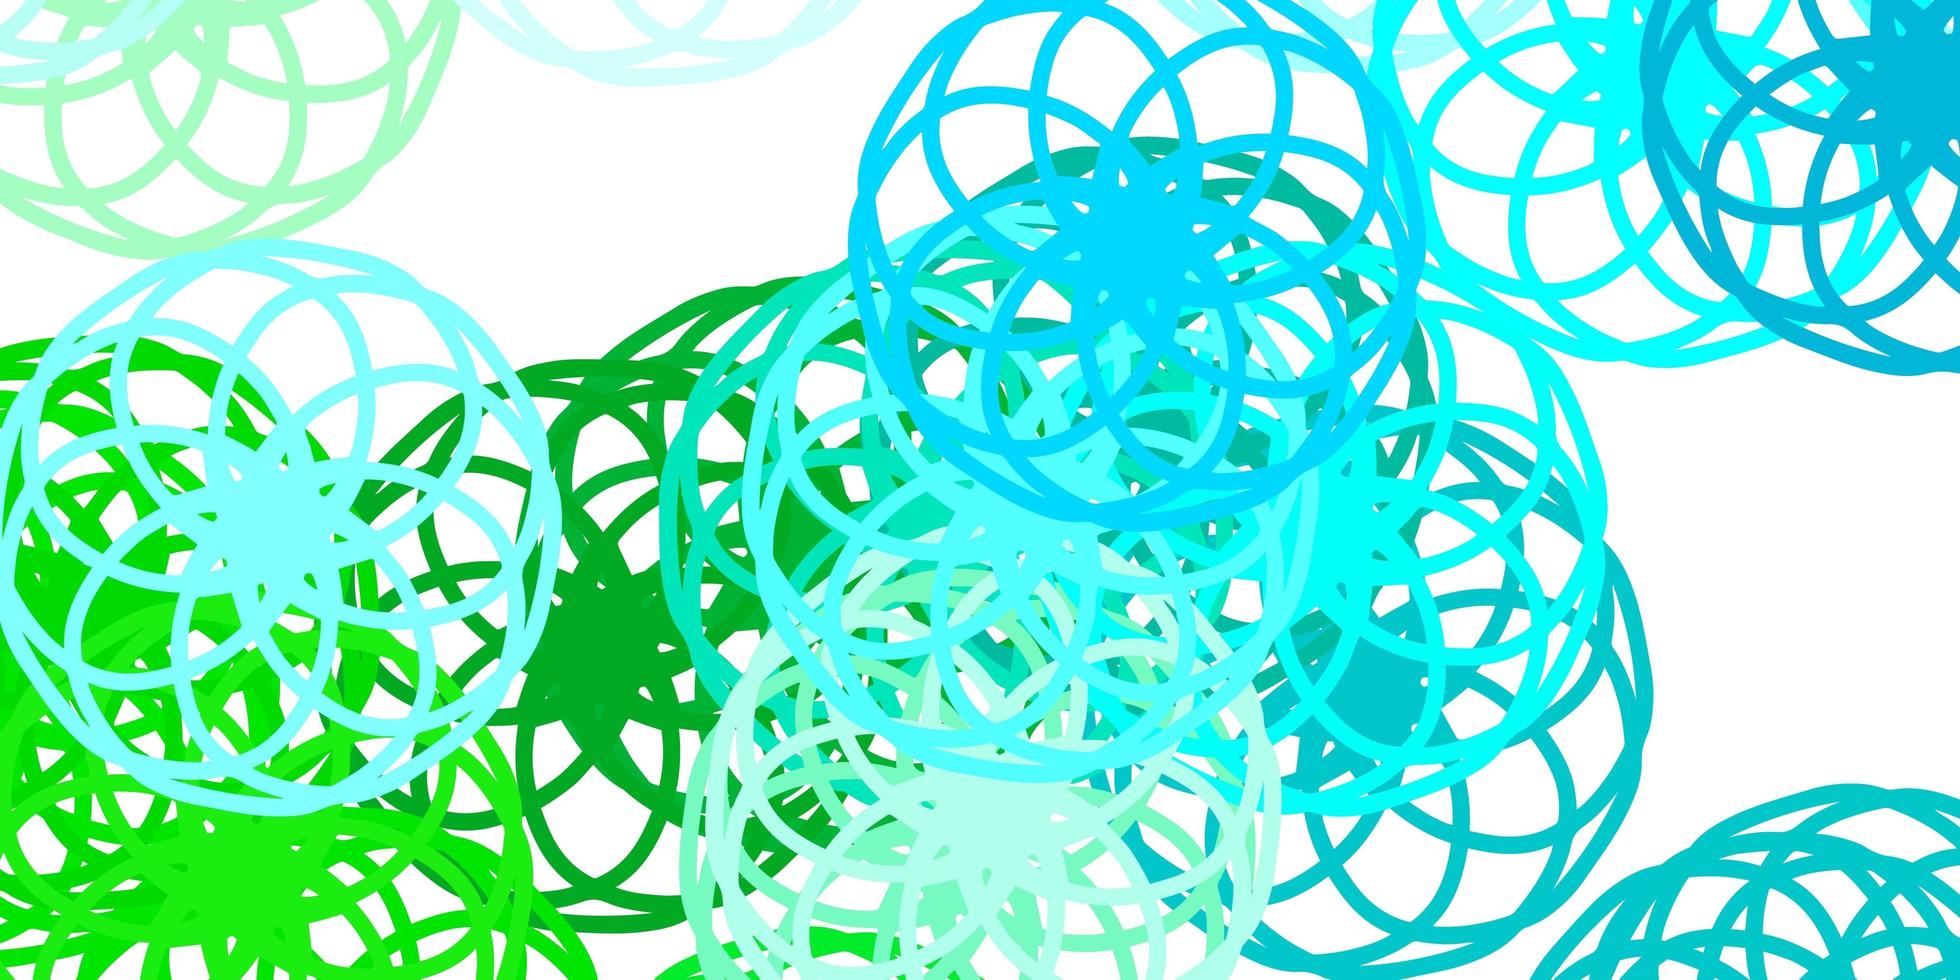 ljusblå, grön vektorstruktur med skivor vektor